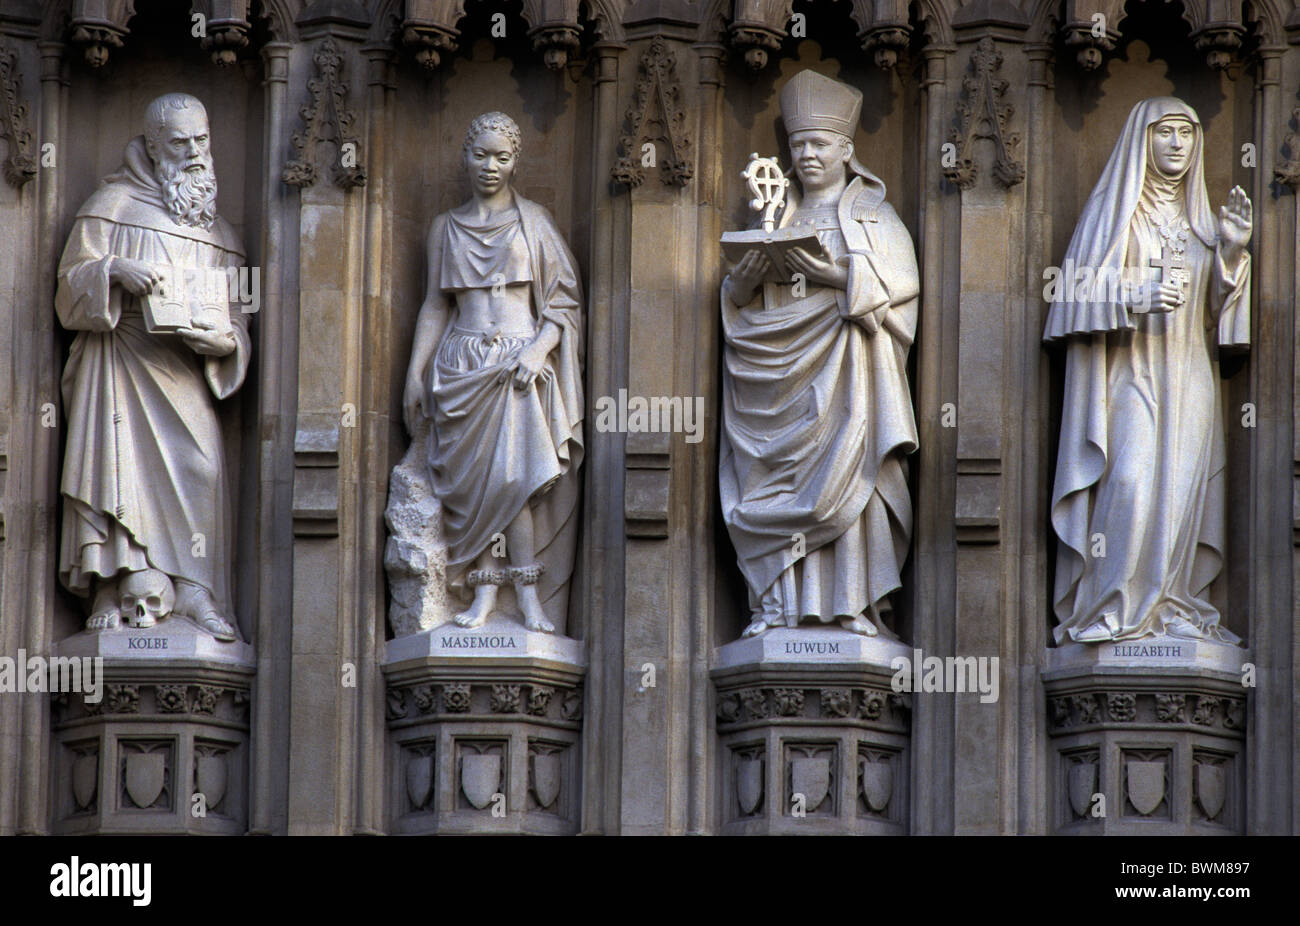 L'Abbazia di Westminster, Londra, Gran Bretagna. 10 statue sopra le porte rappresentano il ventesimo secolo martire cristiano (da sinistra a destra) Massimiliano K Foto Stock